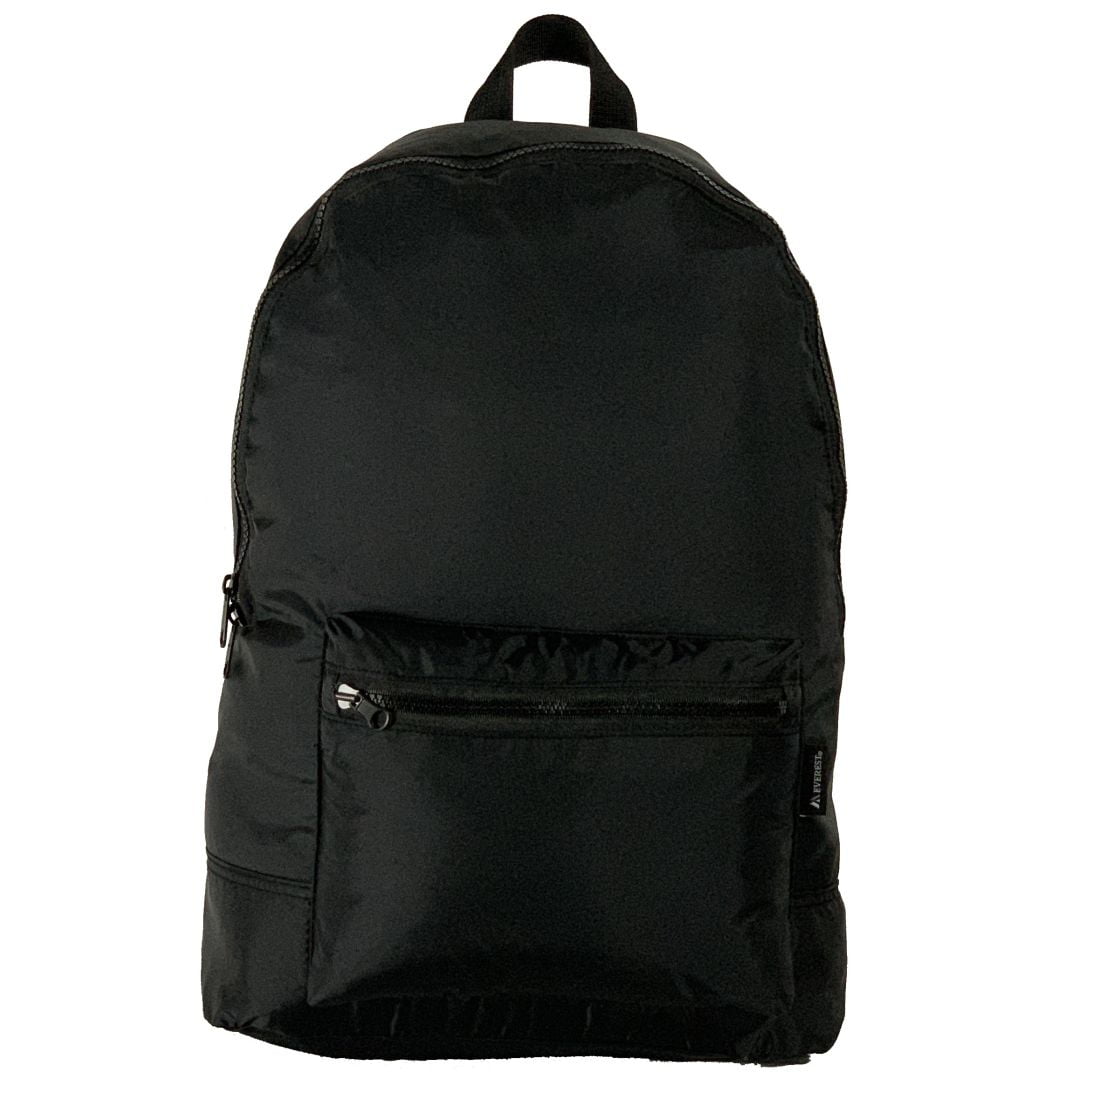 Everest Foldable Nylon Backpack Black 07c68264 744a 438f 96bf af37a016805c.77b3ebc7c7089b3f754a76083cb4e47c